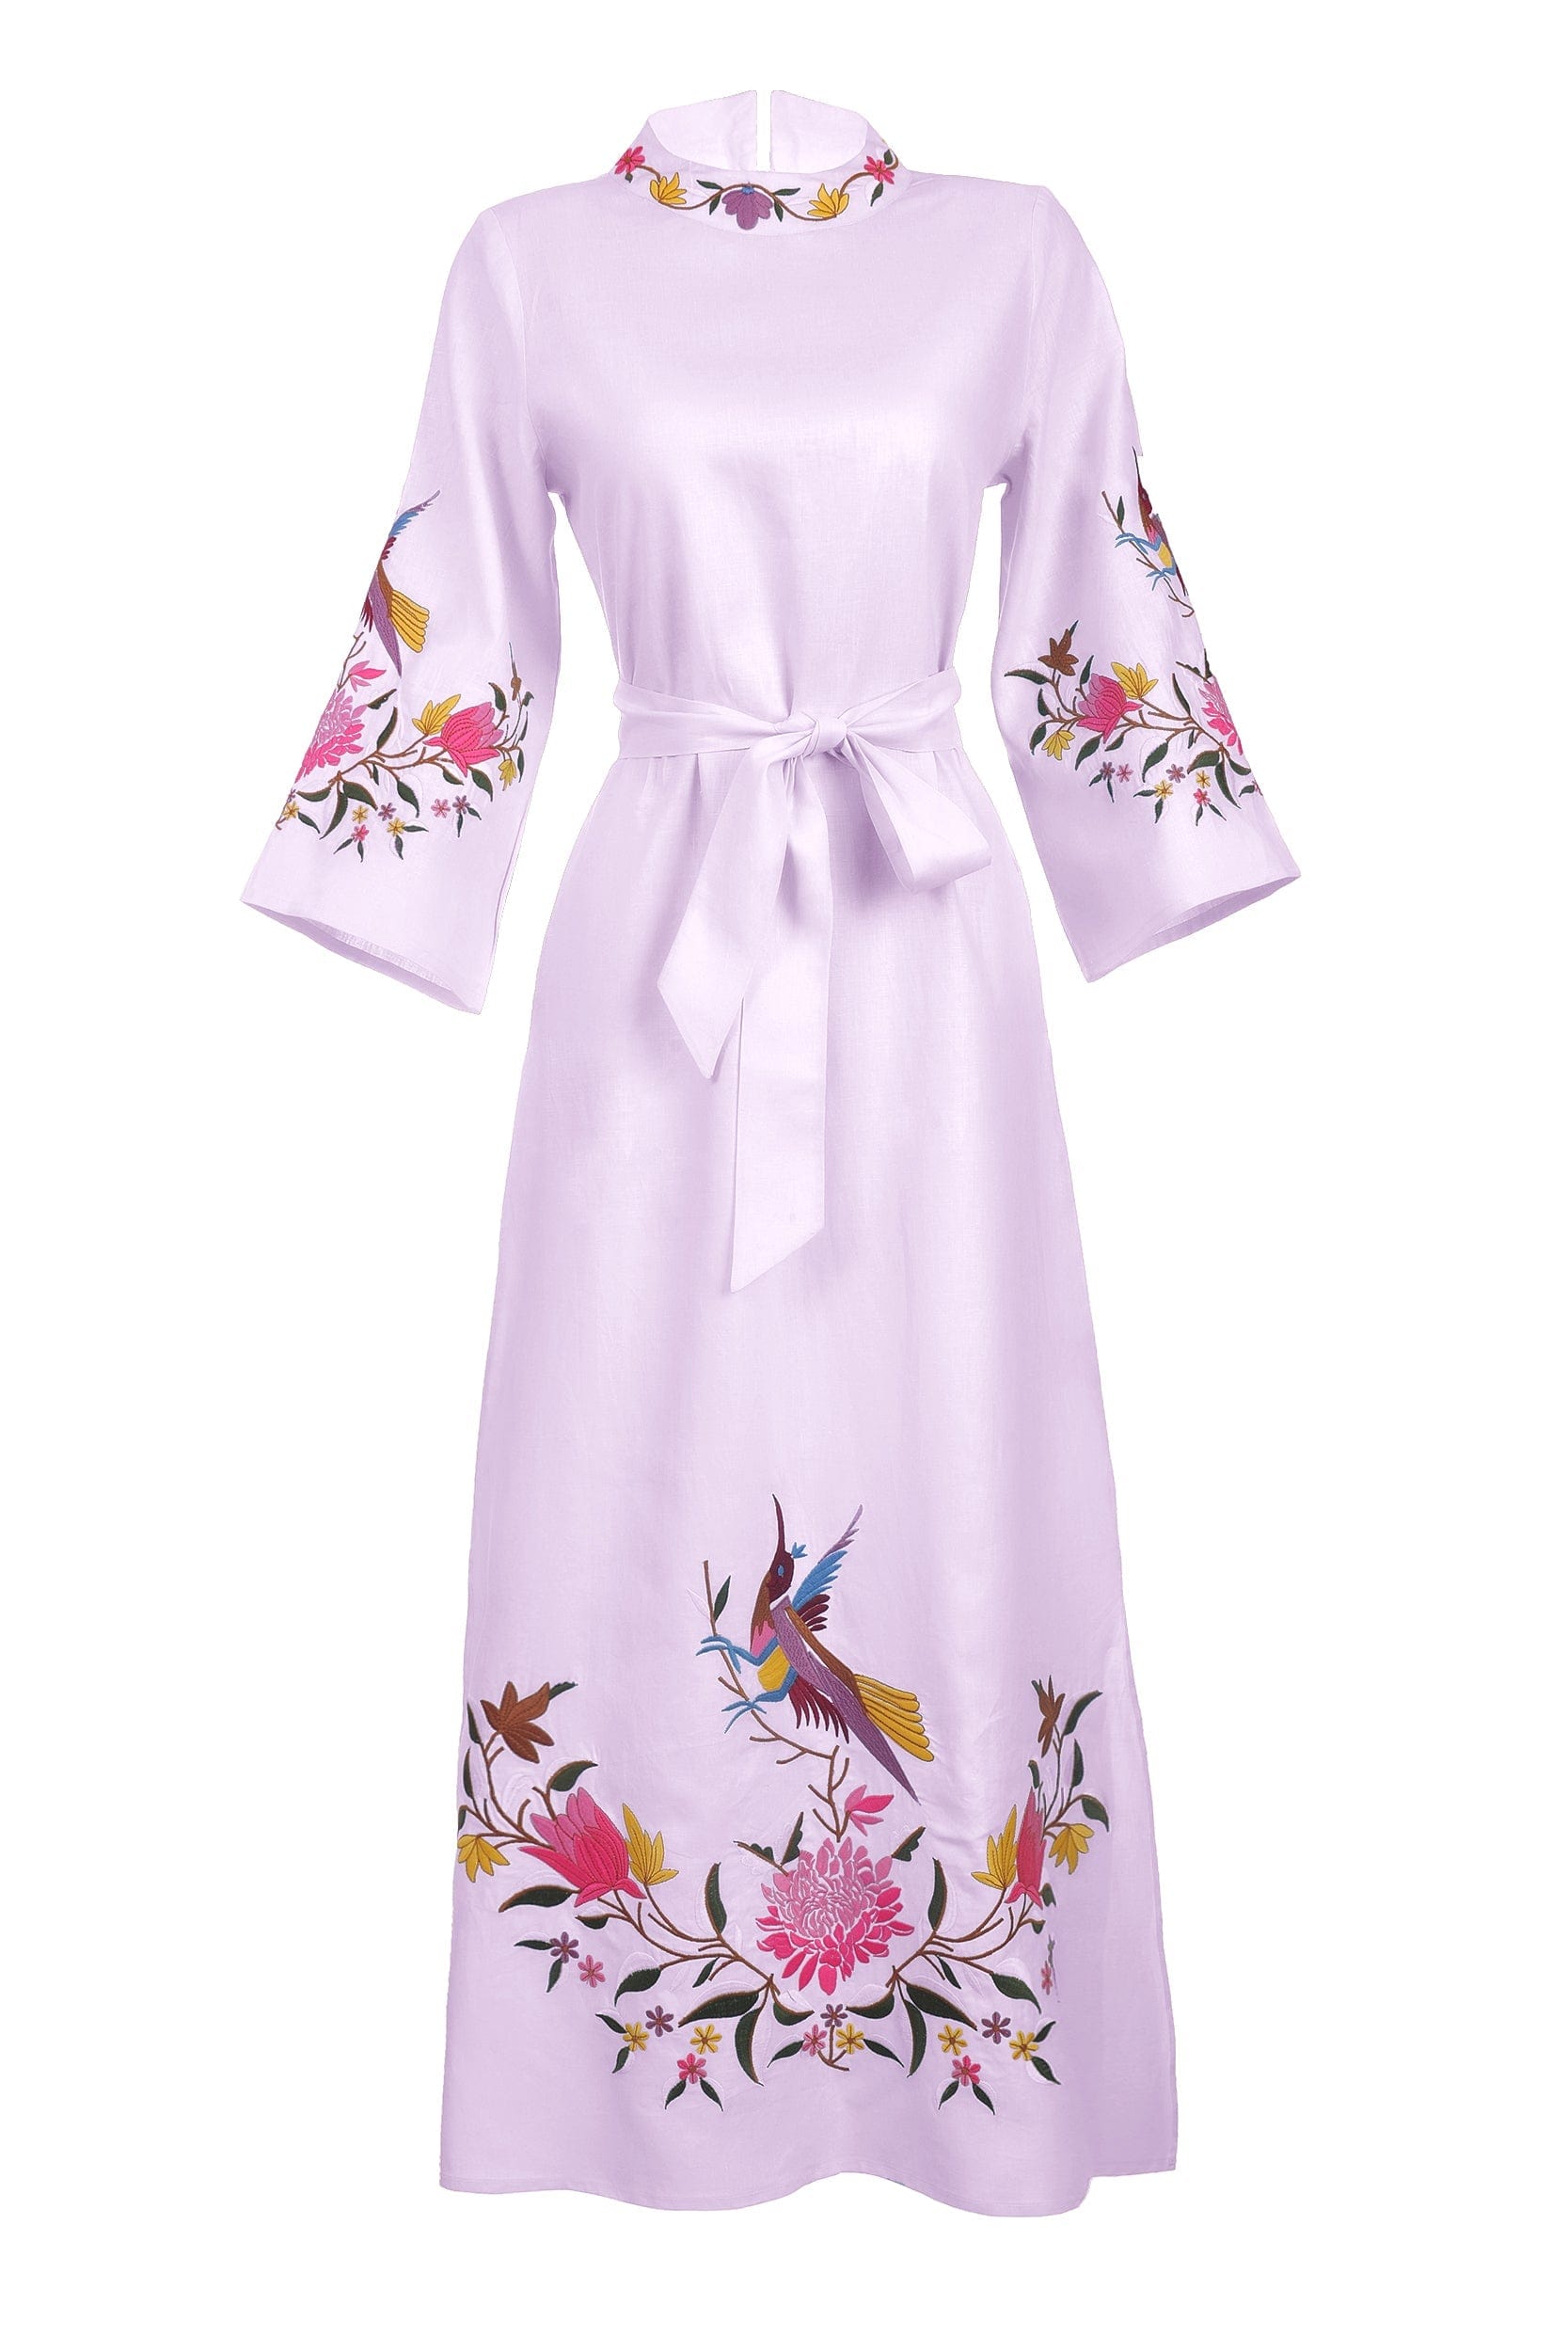 Fanm Mon Dress L / Lilac Asia